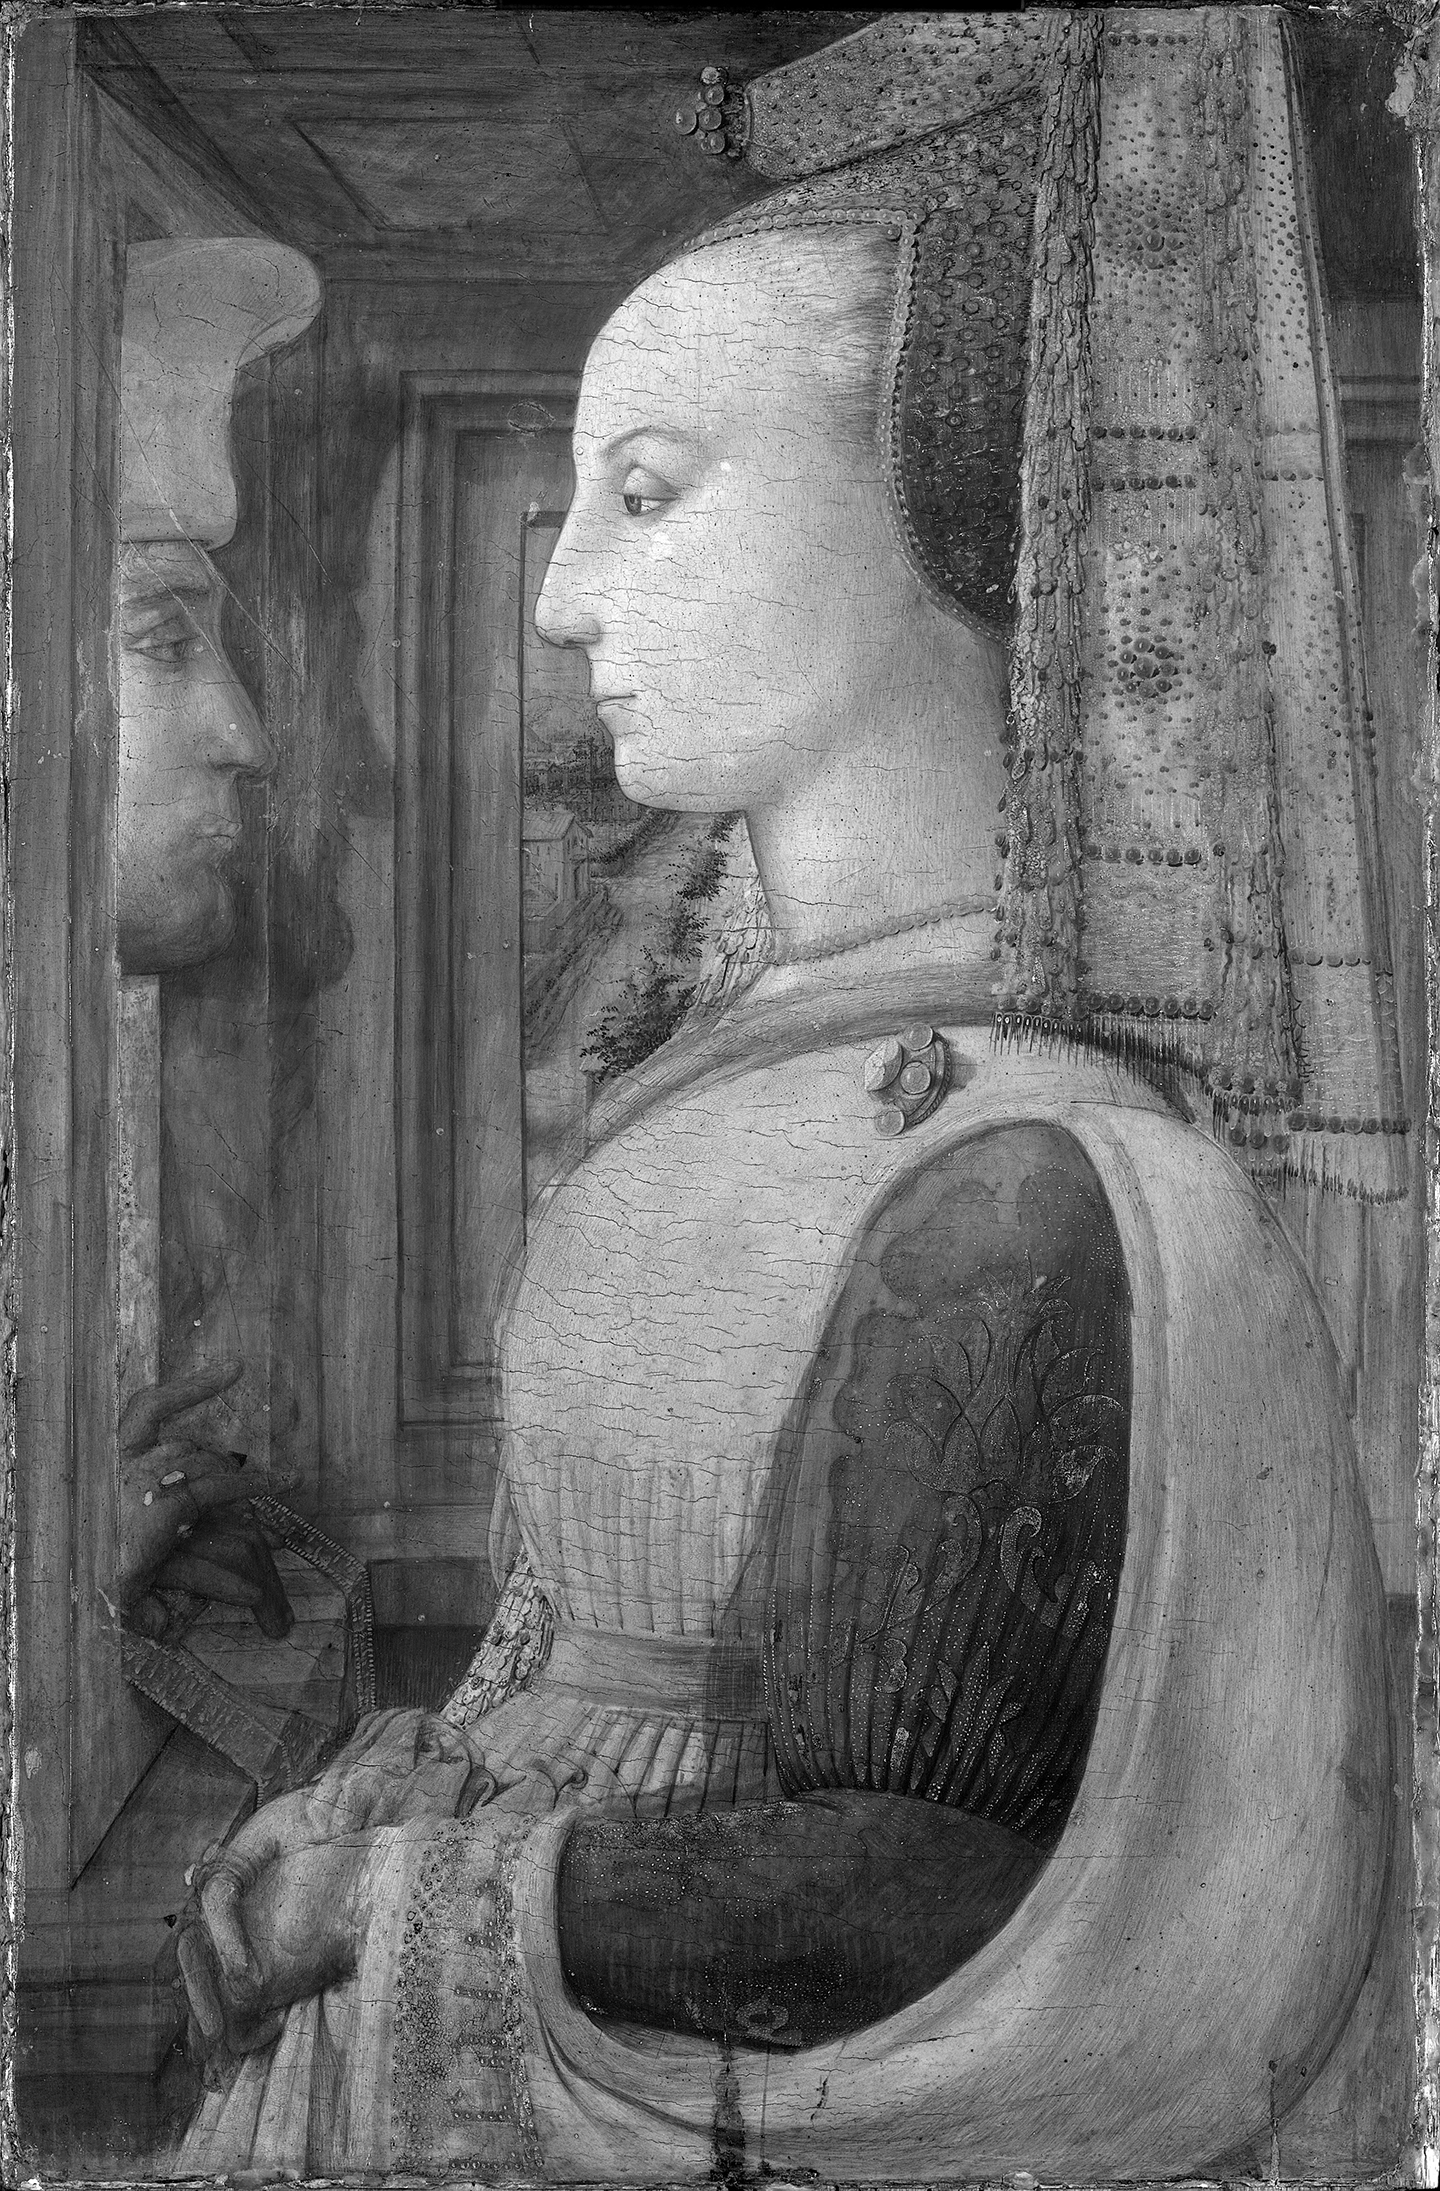 Ảnh quang phổ hồng ngoại của Bảo tàng Metropolitan cho thấy những sửa đổi của họa sỹ Lippi trong bức “Portrait of a Woman With a Man at a Casement” (Chân dung người phụ nữ và người đàn ông bên cửa sổ). Bảo tàng Nghệ thuật Metropolitan, thành phố New York. (Ảnh: Tư liệu công cộng)